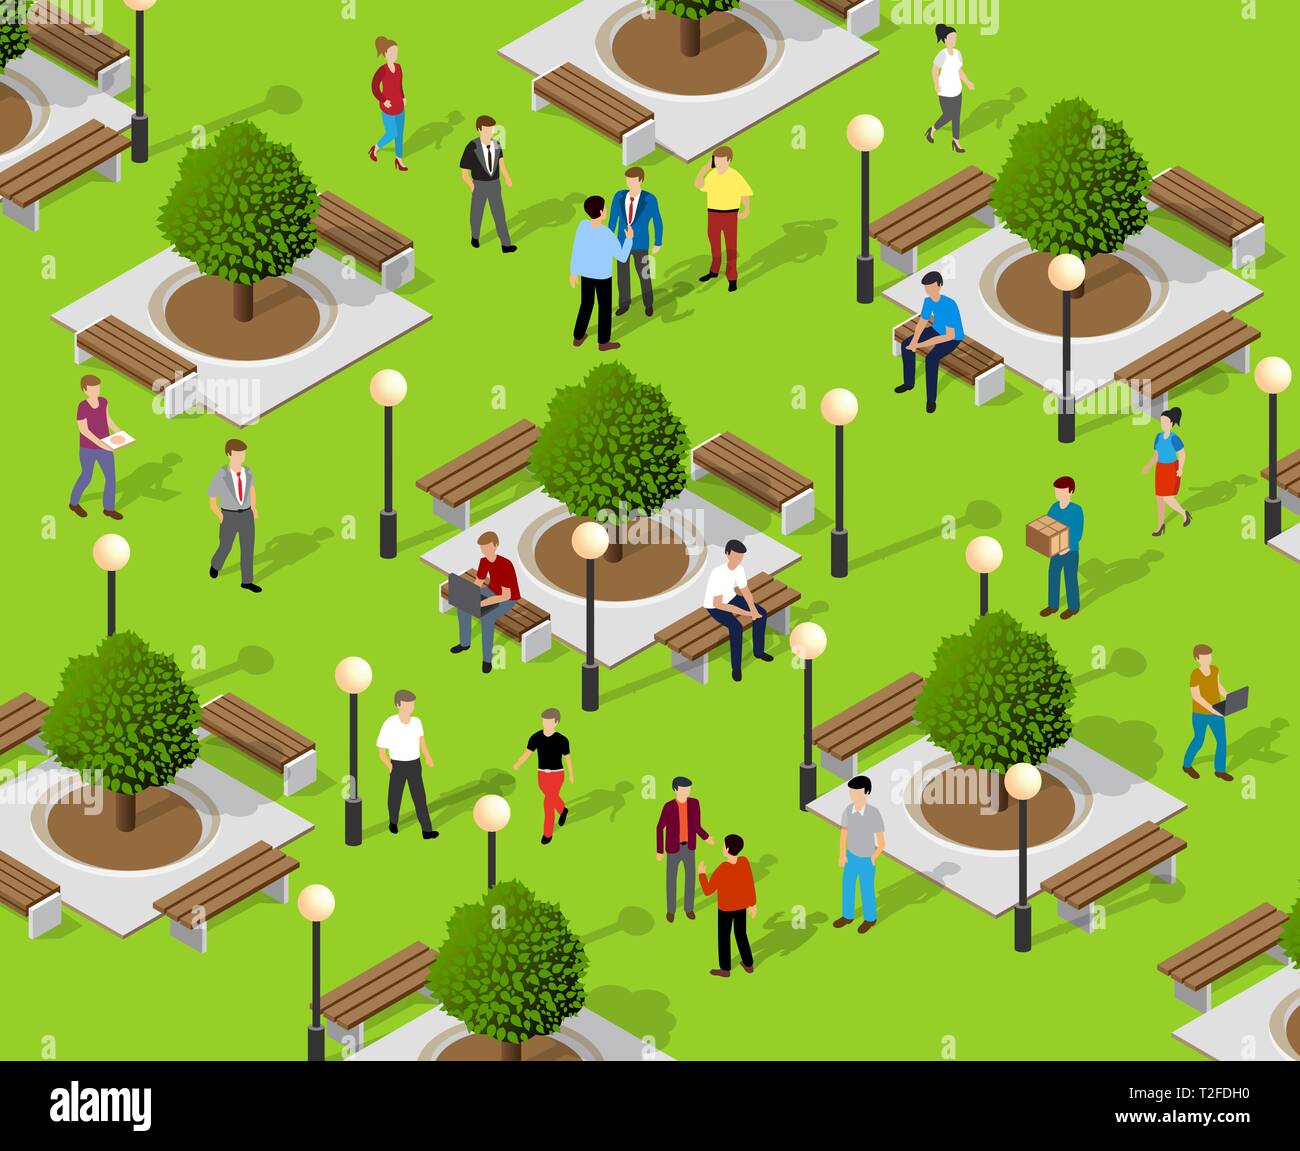 Isometrische Menschen lifestyle Kommunikation in einem städtischen Umfeld in einem Park mit Bänken und Bäumen Stock Vektor